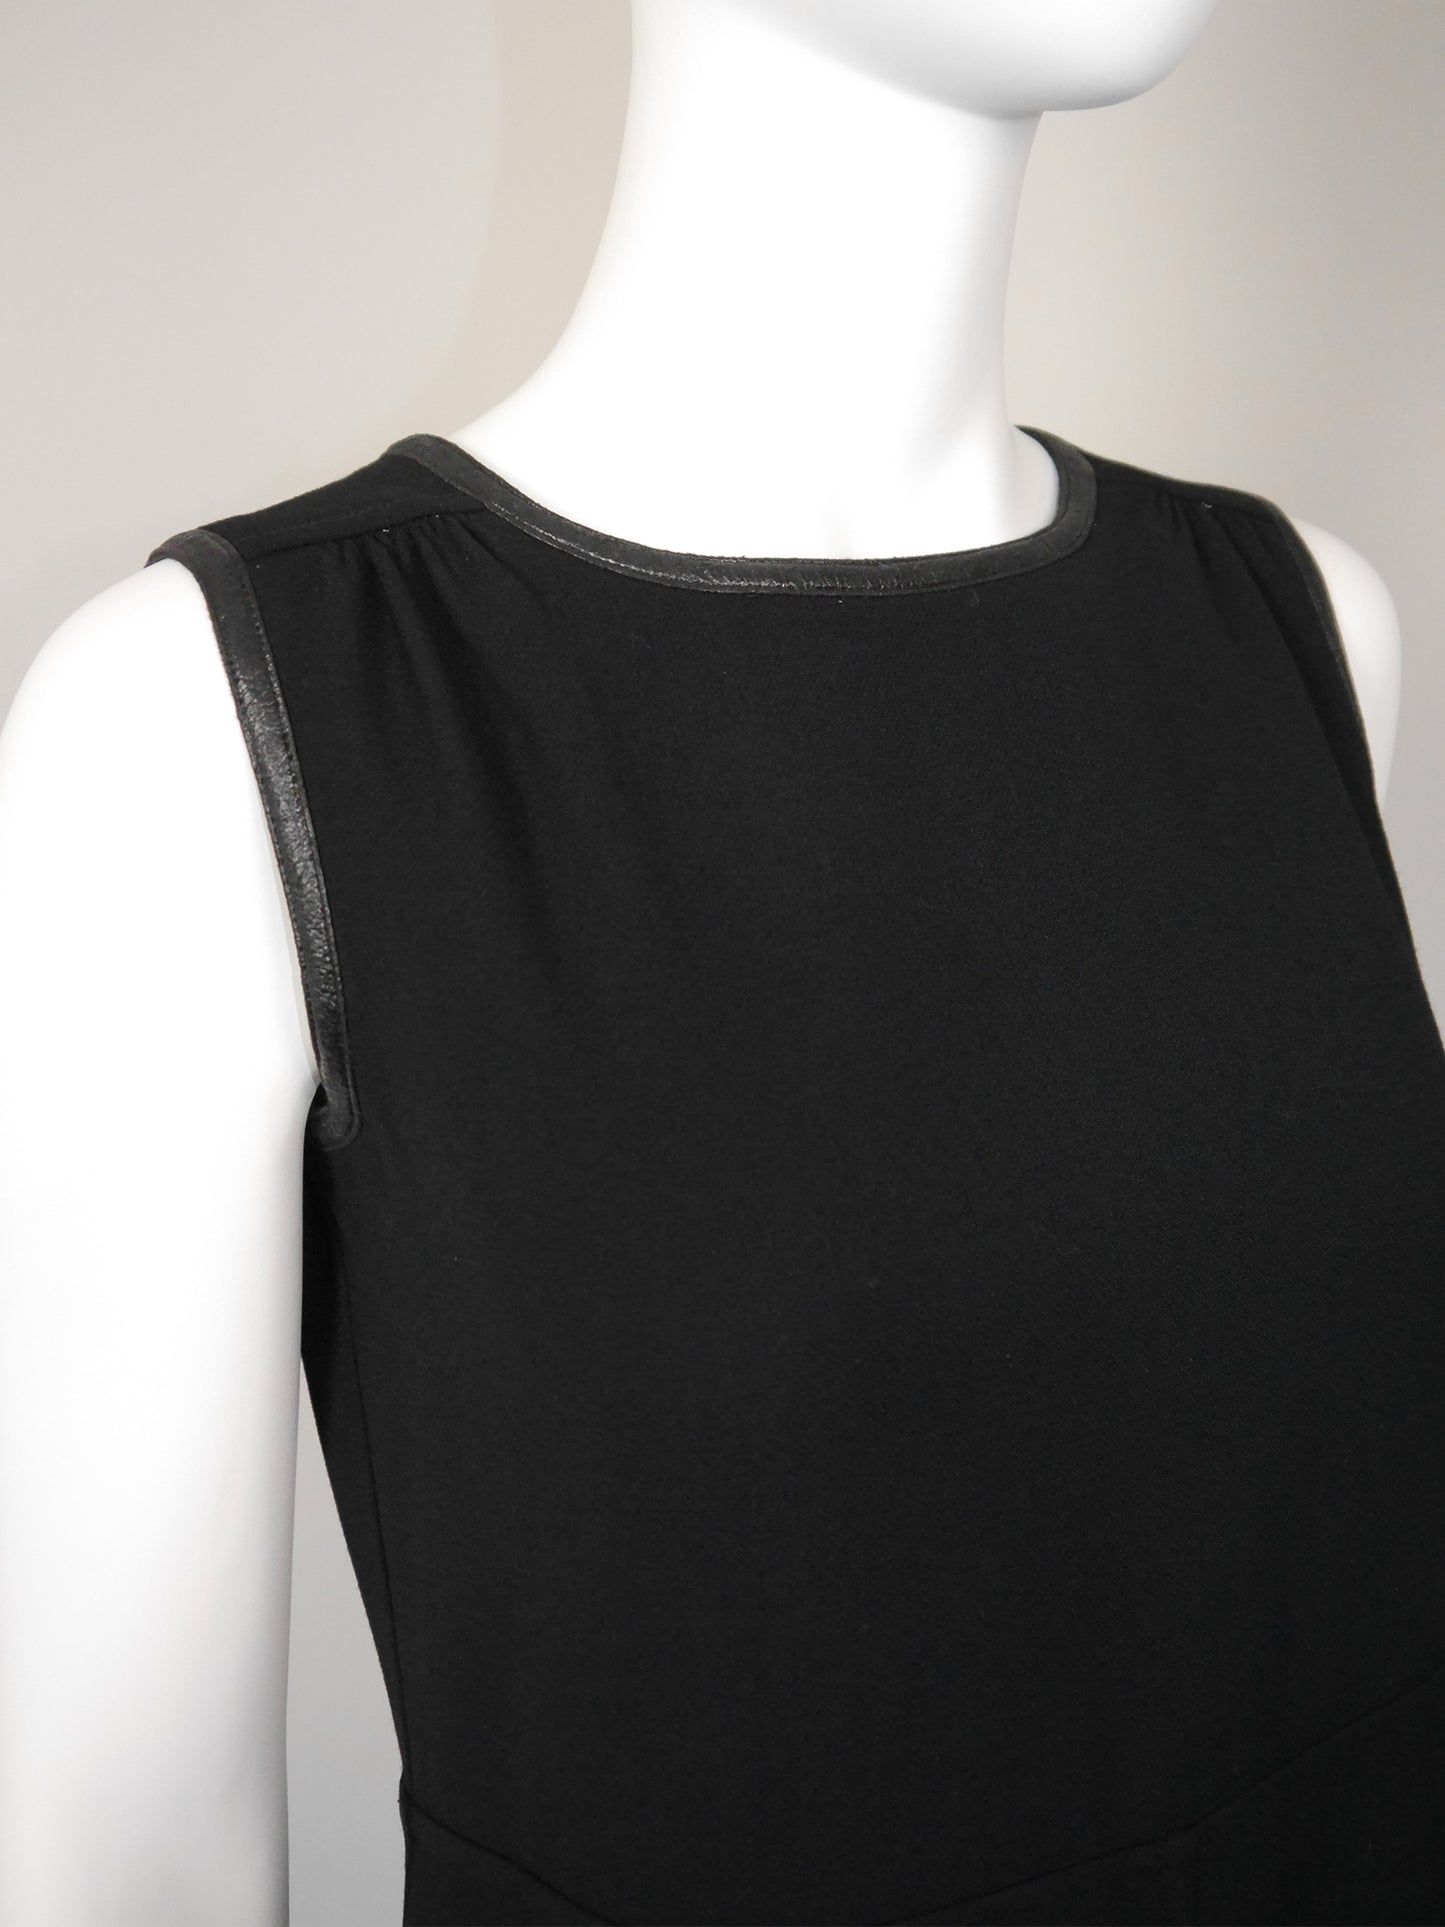 COURRÈGES 1960s 1970s Vintage Black Maxi Evening Dress Faux Leather Edges Size S